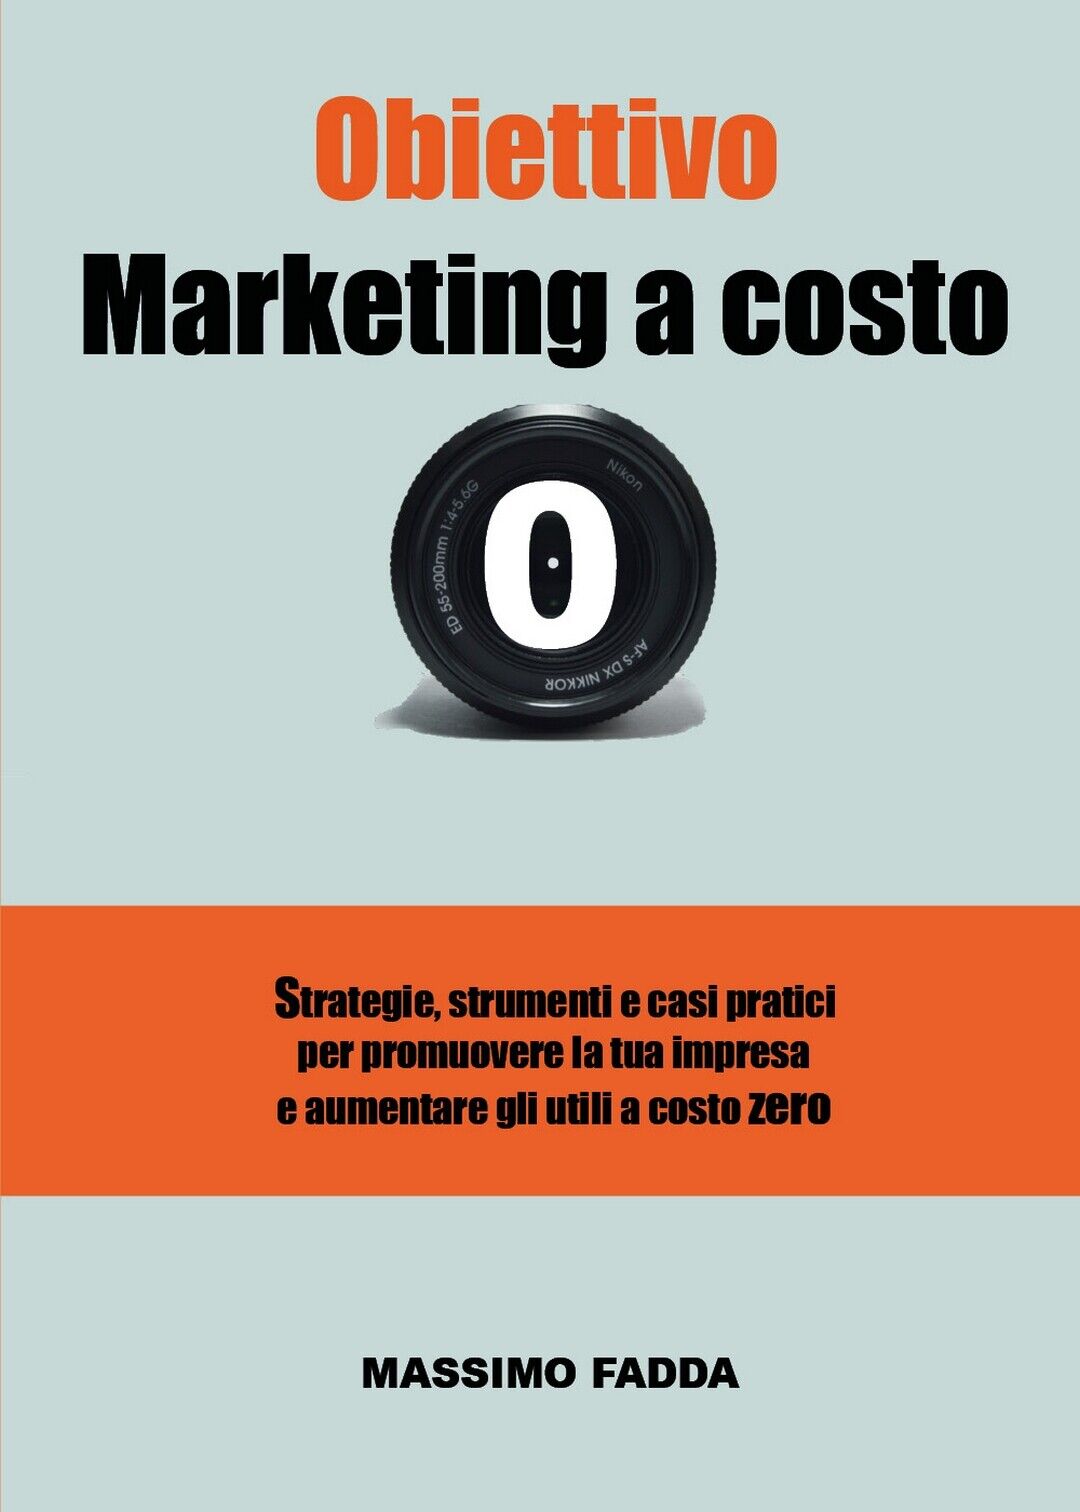 Obiettivo Marketing a costo zero  di Massimo Fadda,  2020,  Youcanprint libro usato